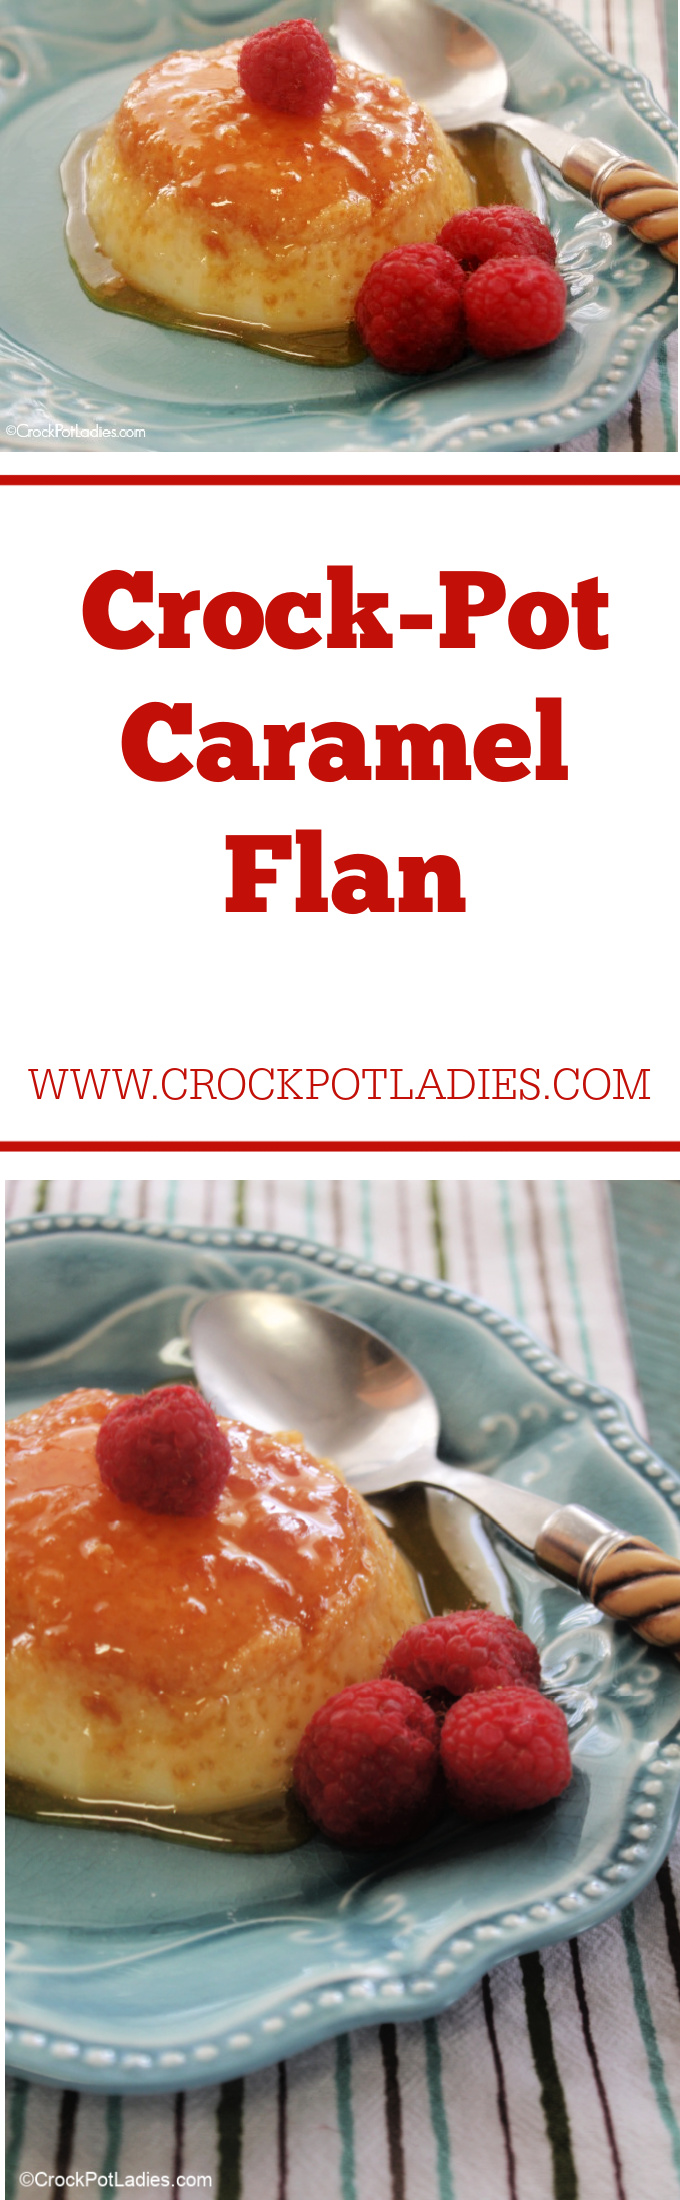 Crock-Pot Caramel Flan